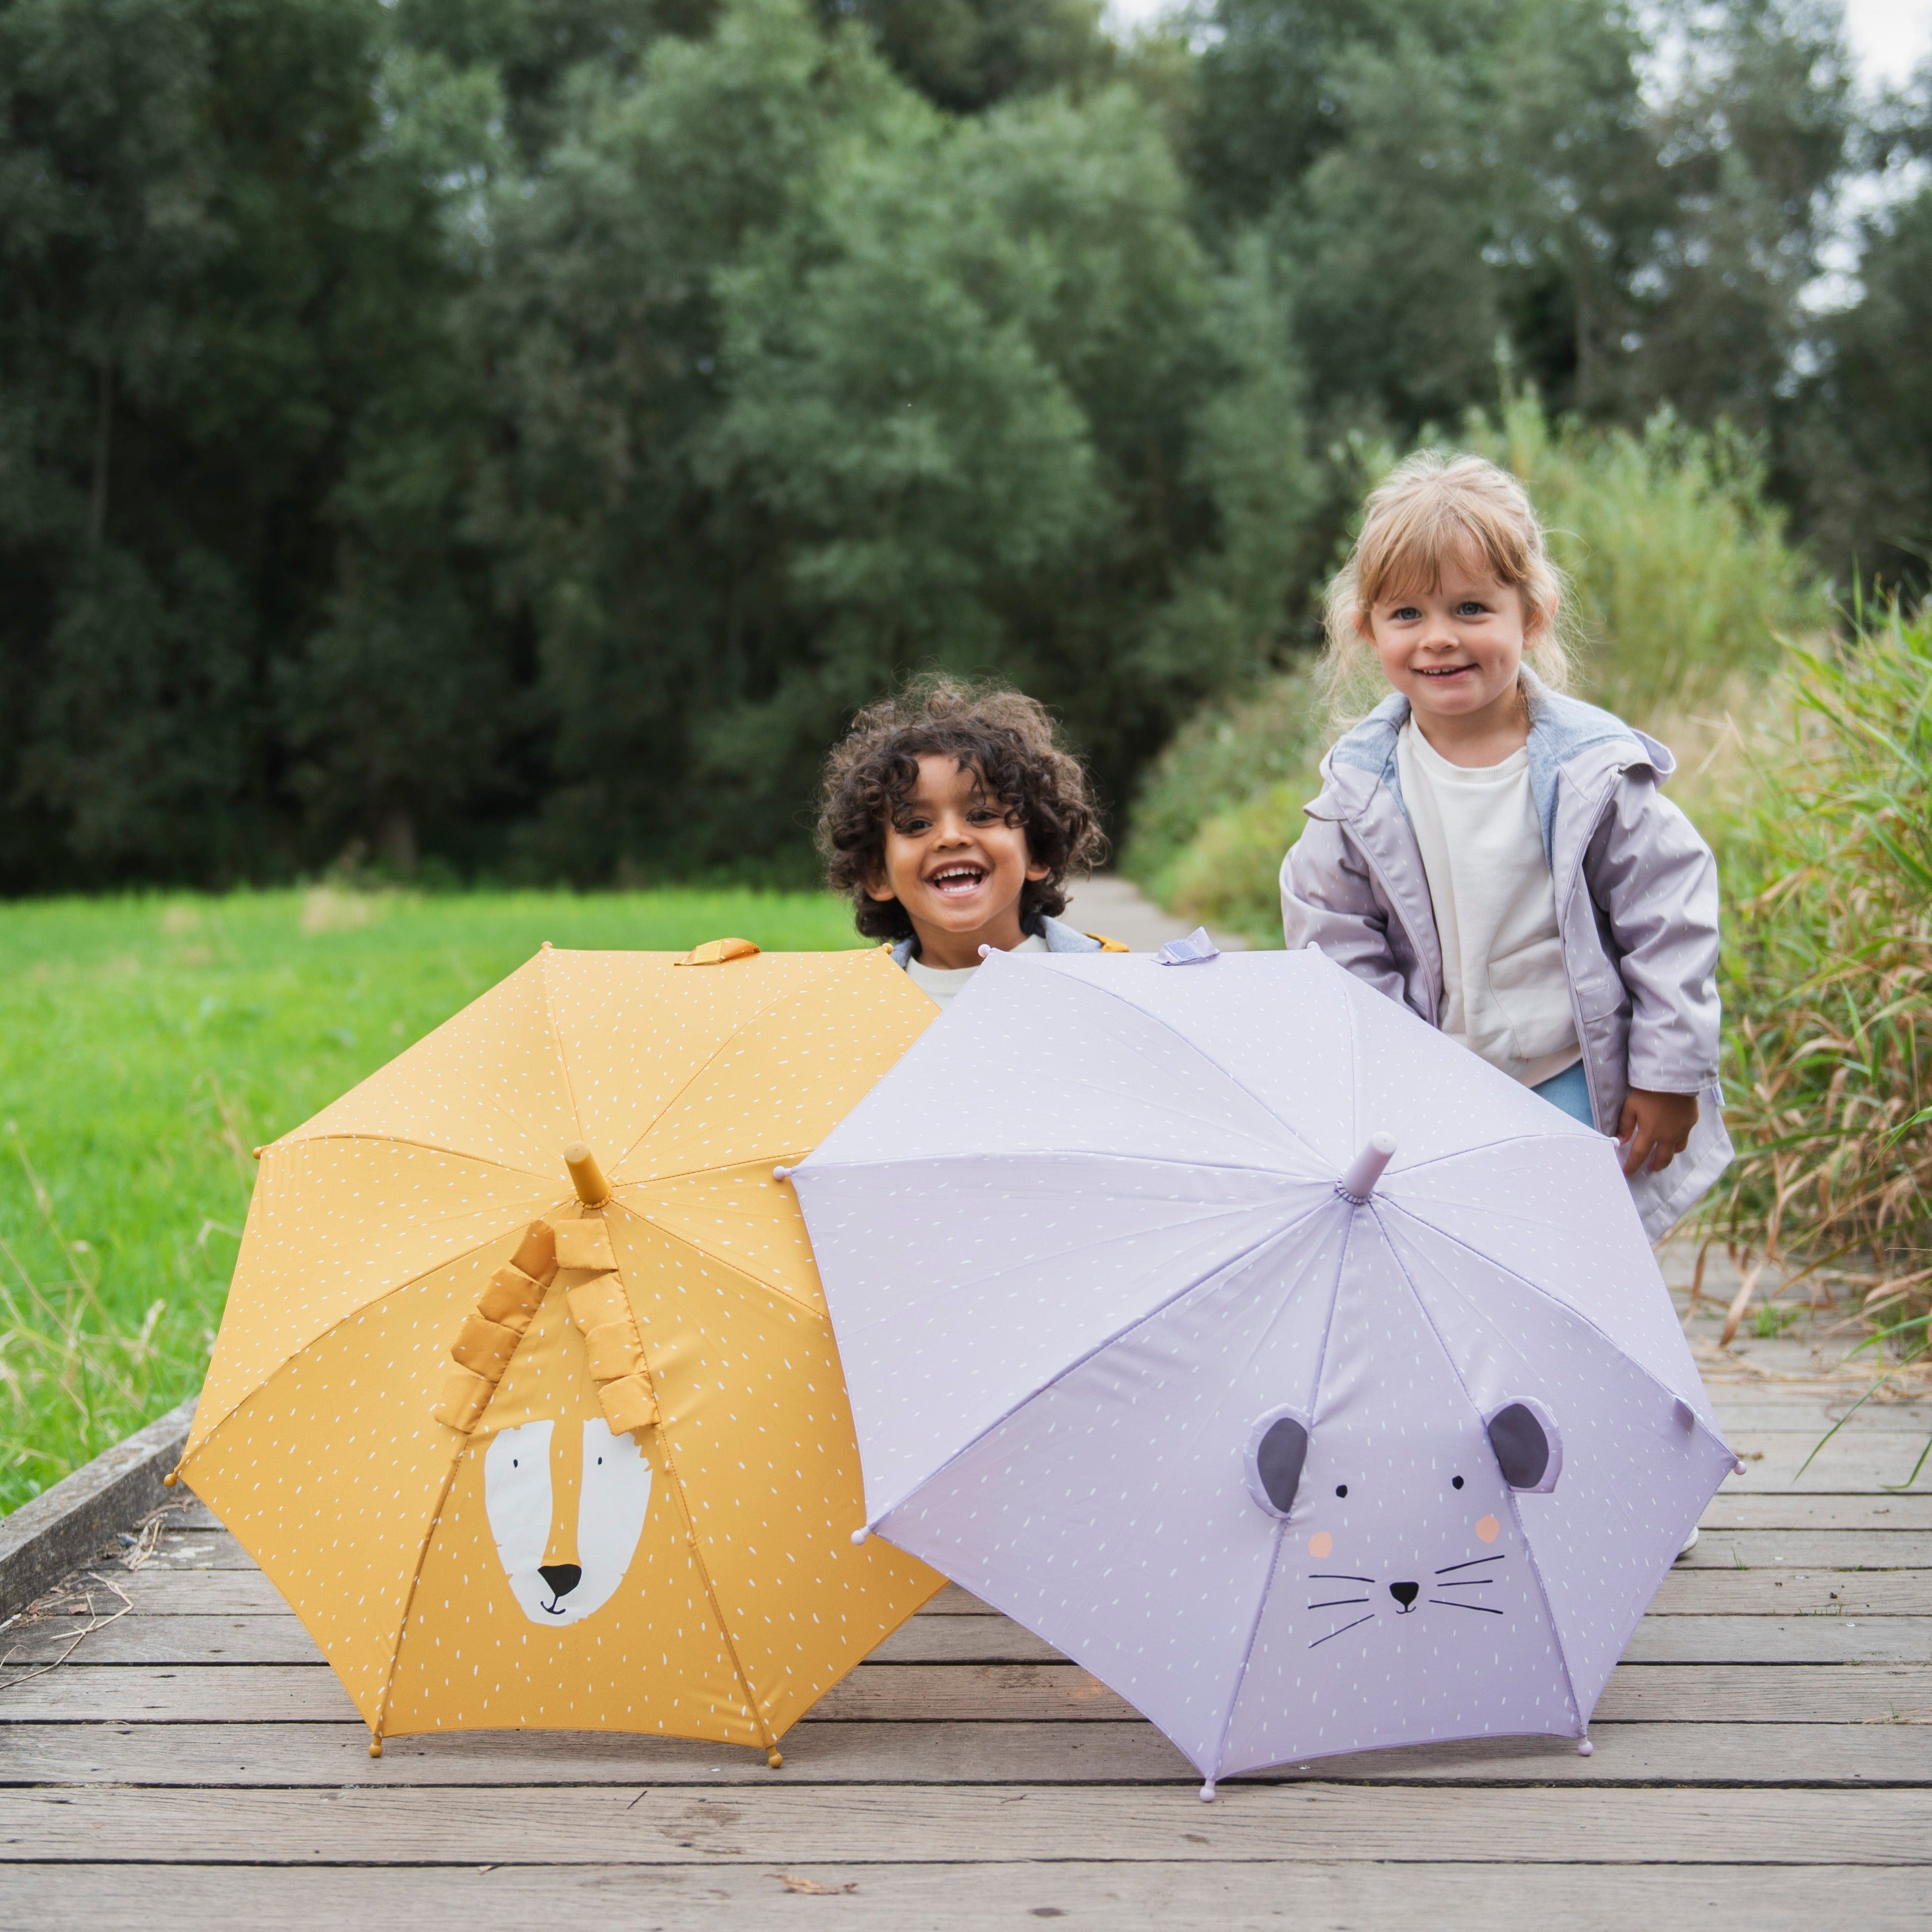 Kinder Regenschirm personalisiert - Tiere